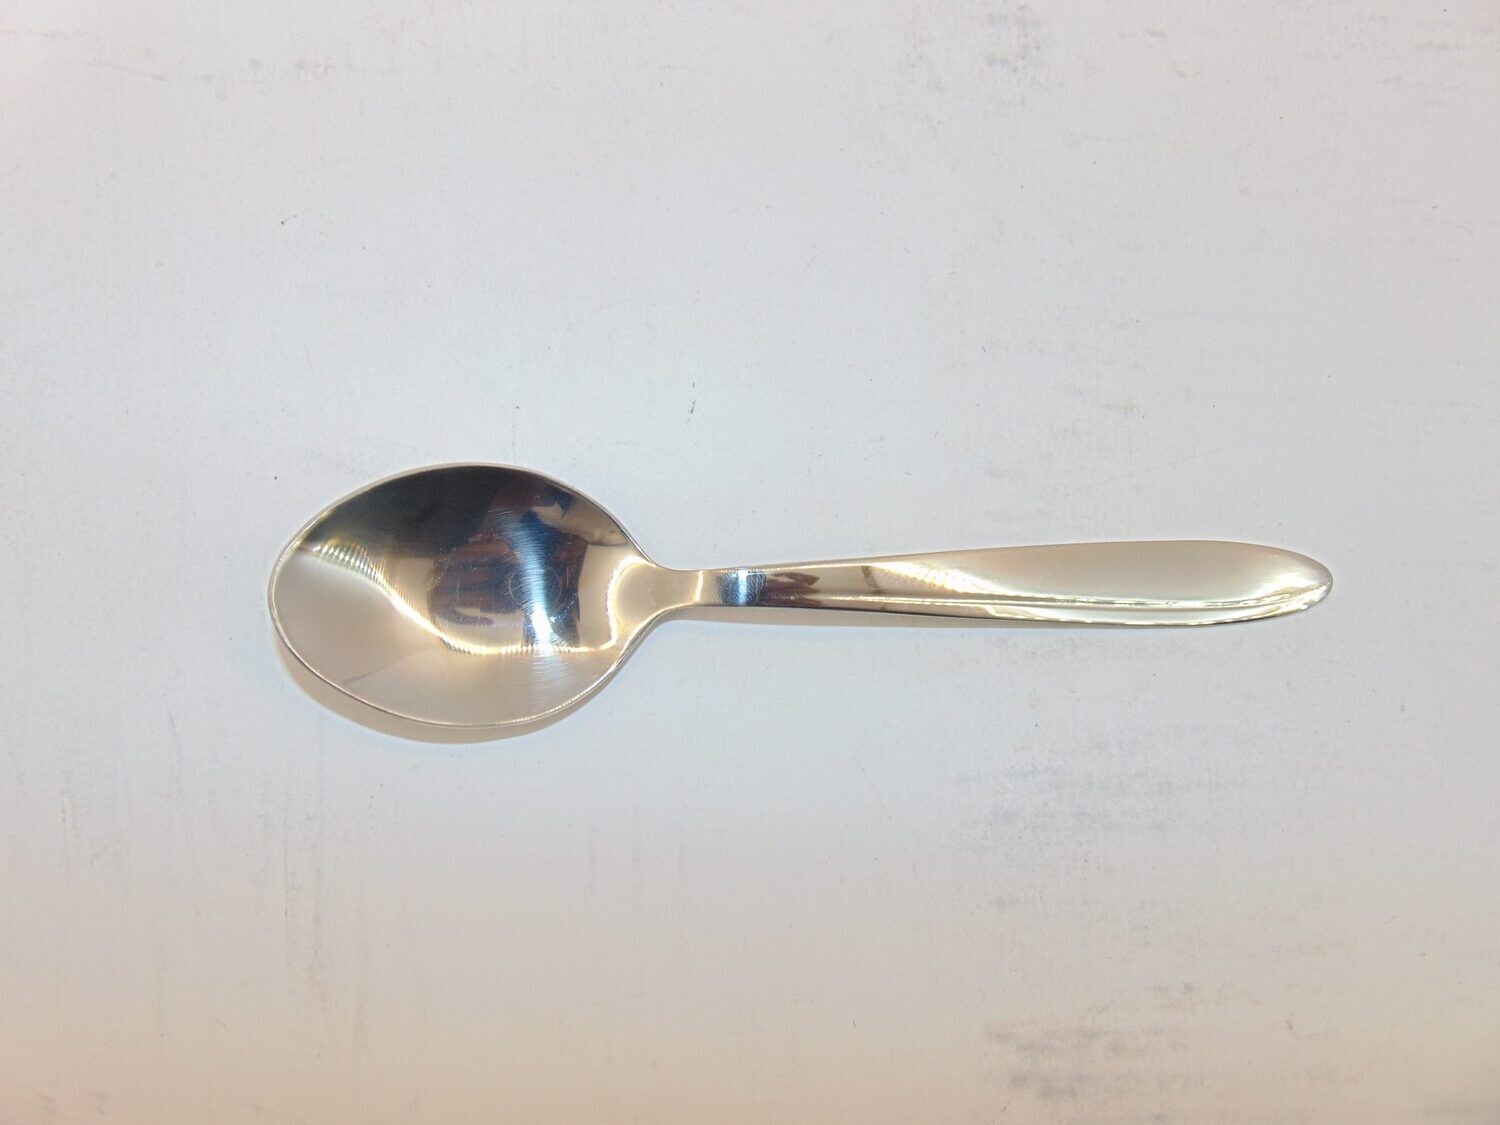 Bon Appetit Regal cutlery 6pcs soup spoons